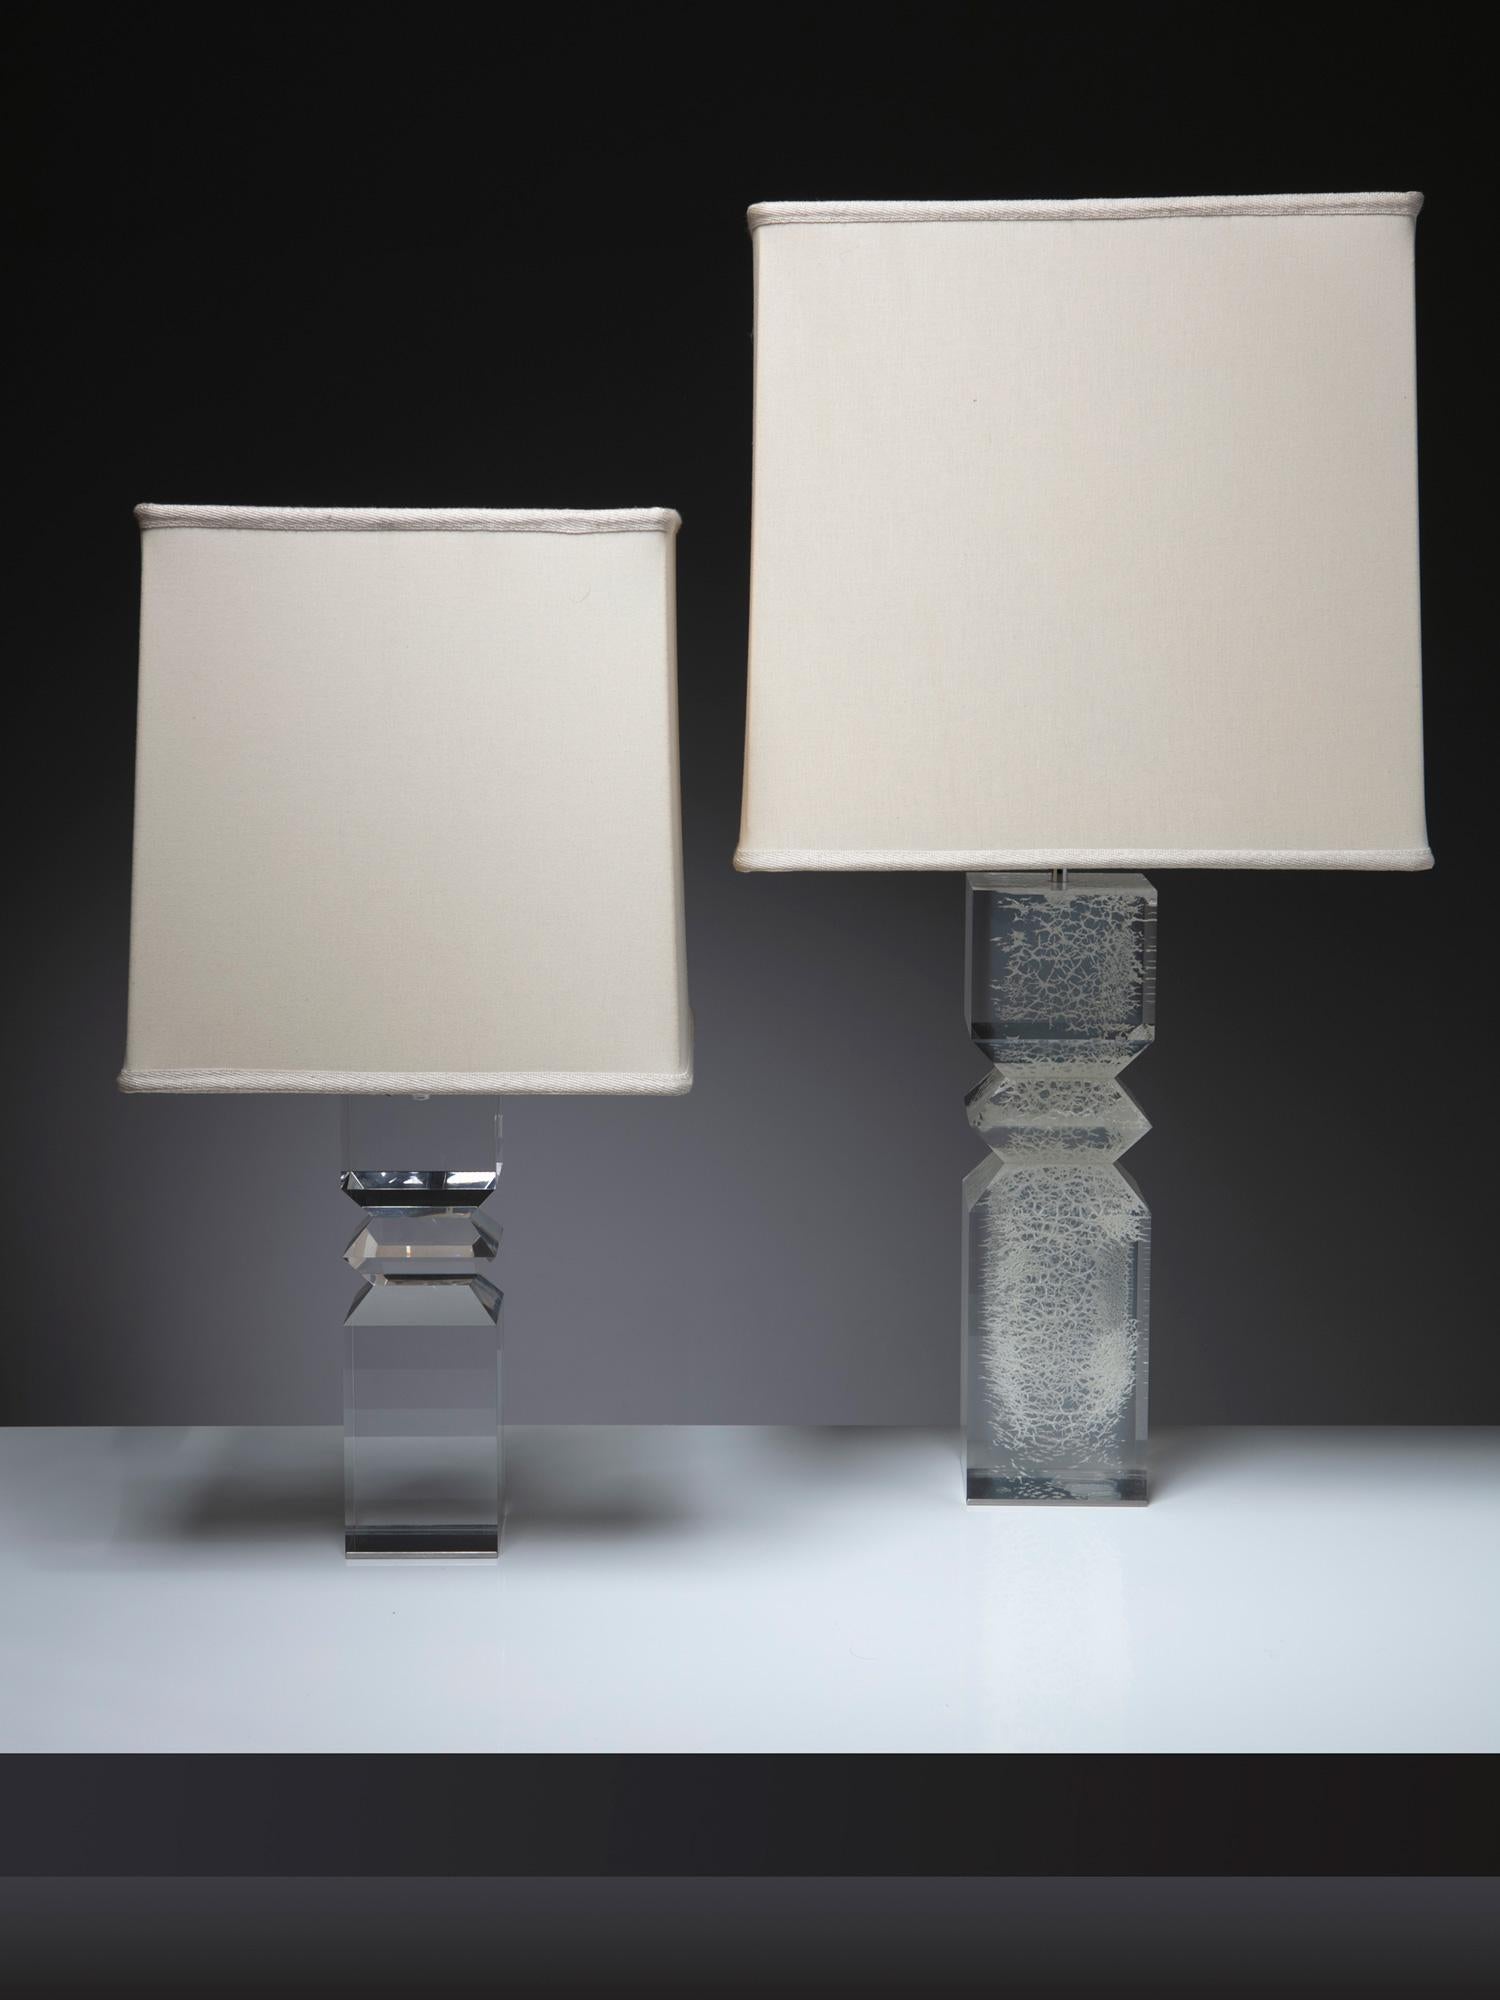 Paire de lampes de table en plexiglas par Alessio Tasca pour Fusina.
Faisant partie de la sperimétrie sculpturale de Tasca pour les objets domestiques, ces lampes présentent un corps en plexiglas solide avec des découpes géométriques, une base en